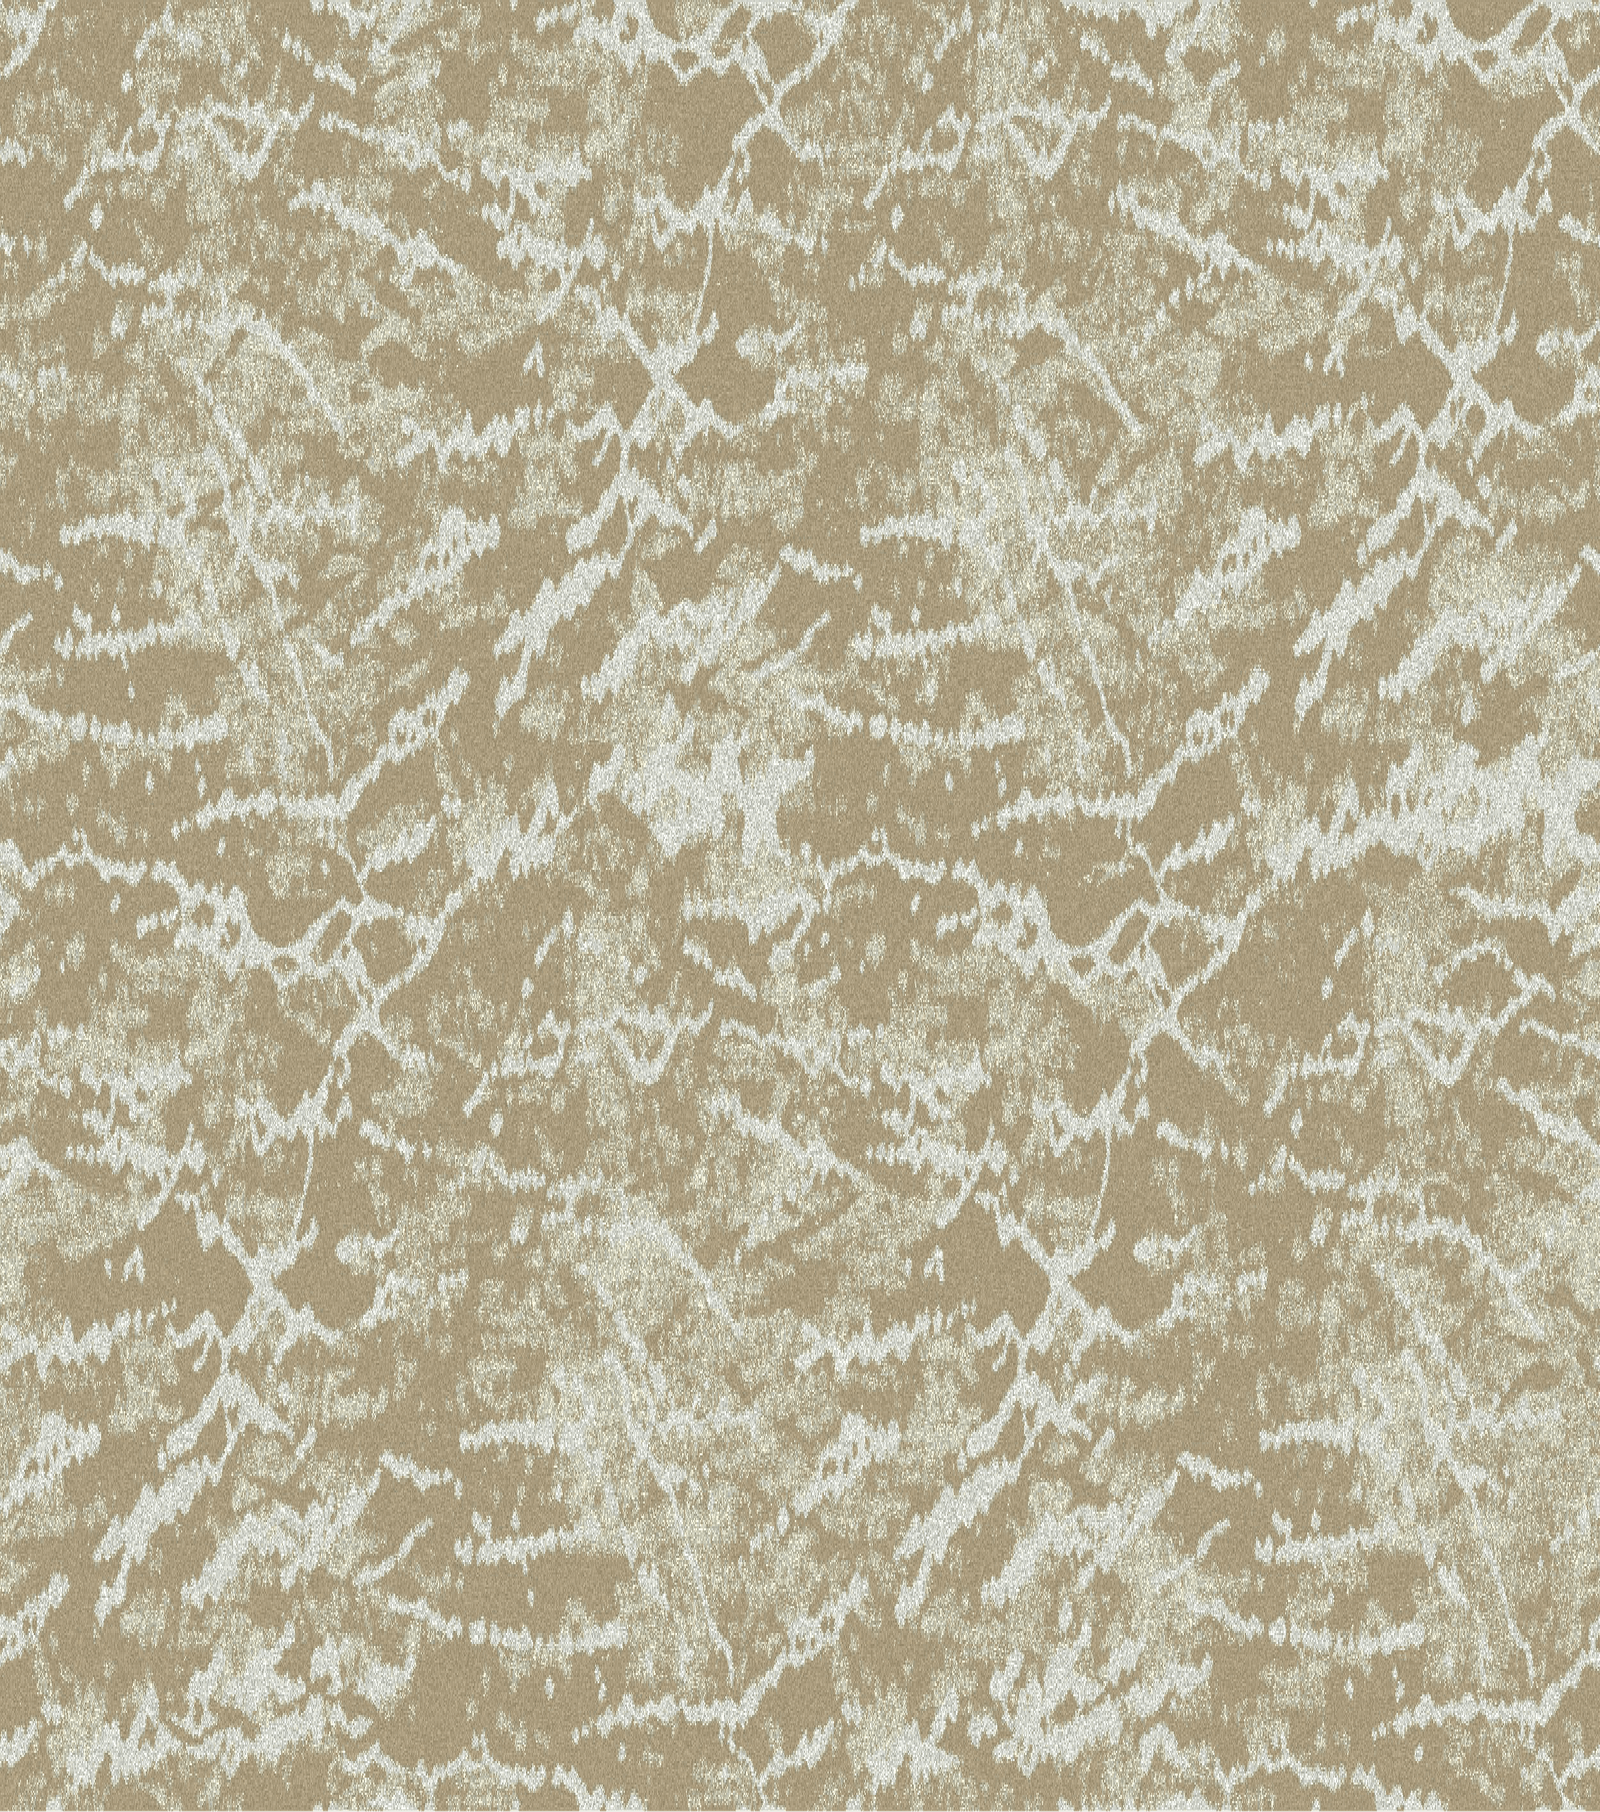 Cut Pile Carpet-OCEAN